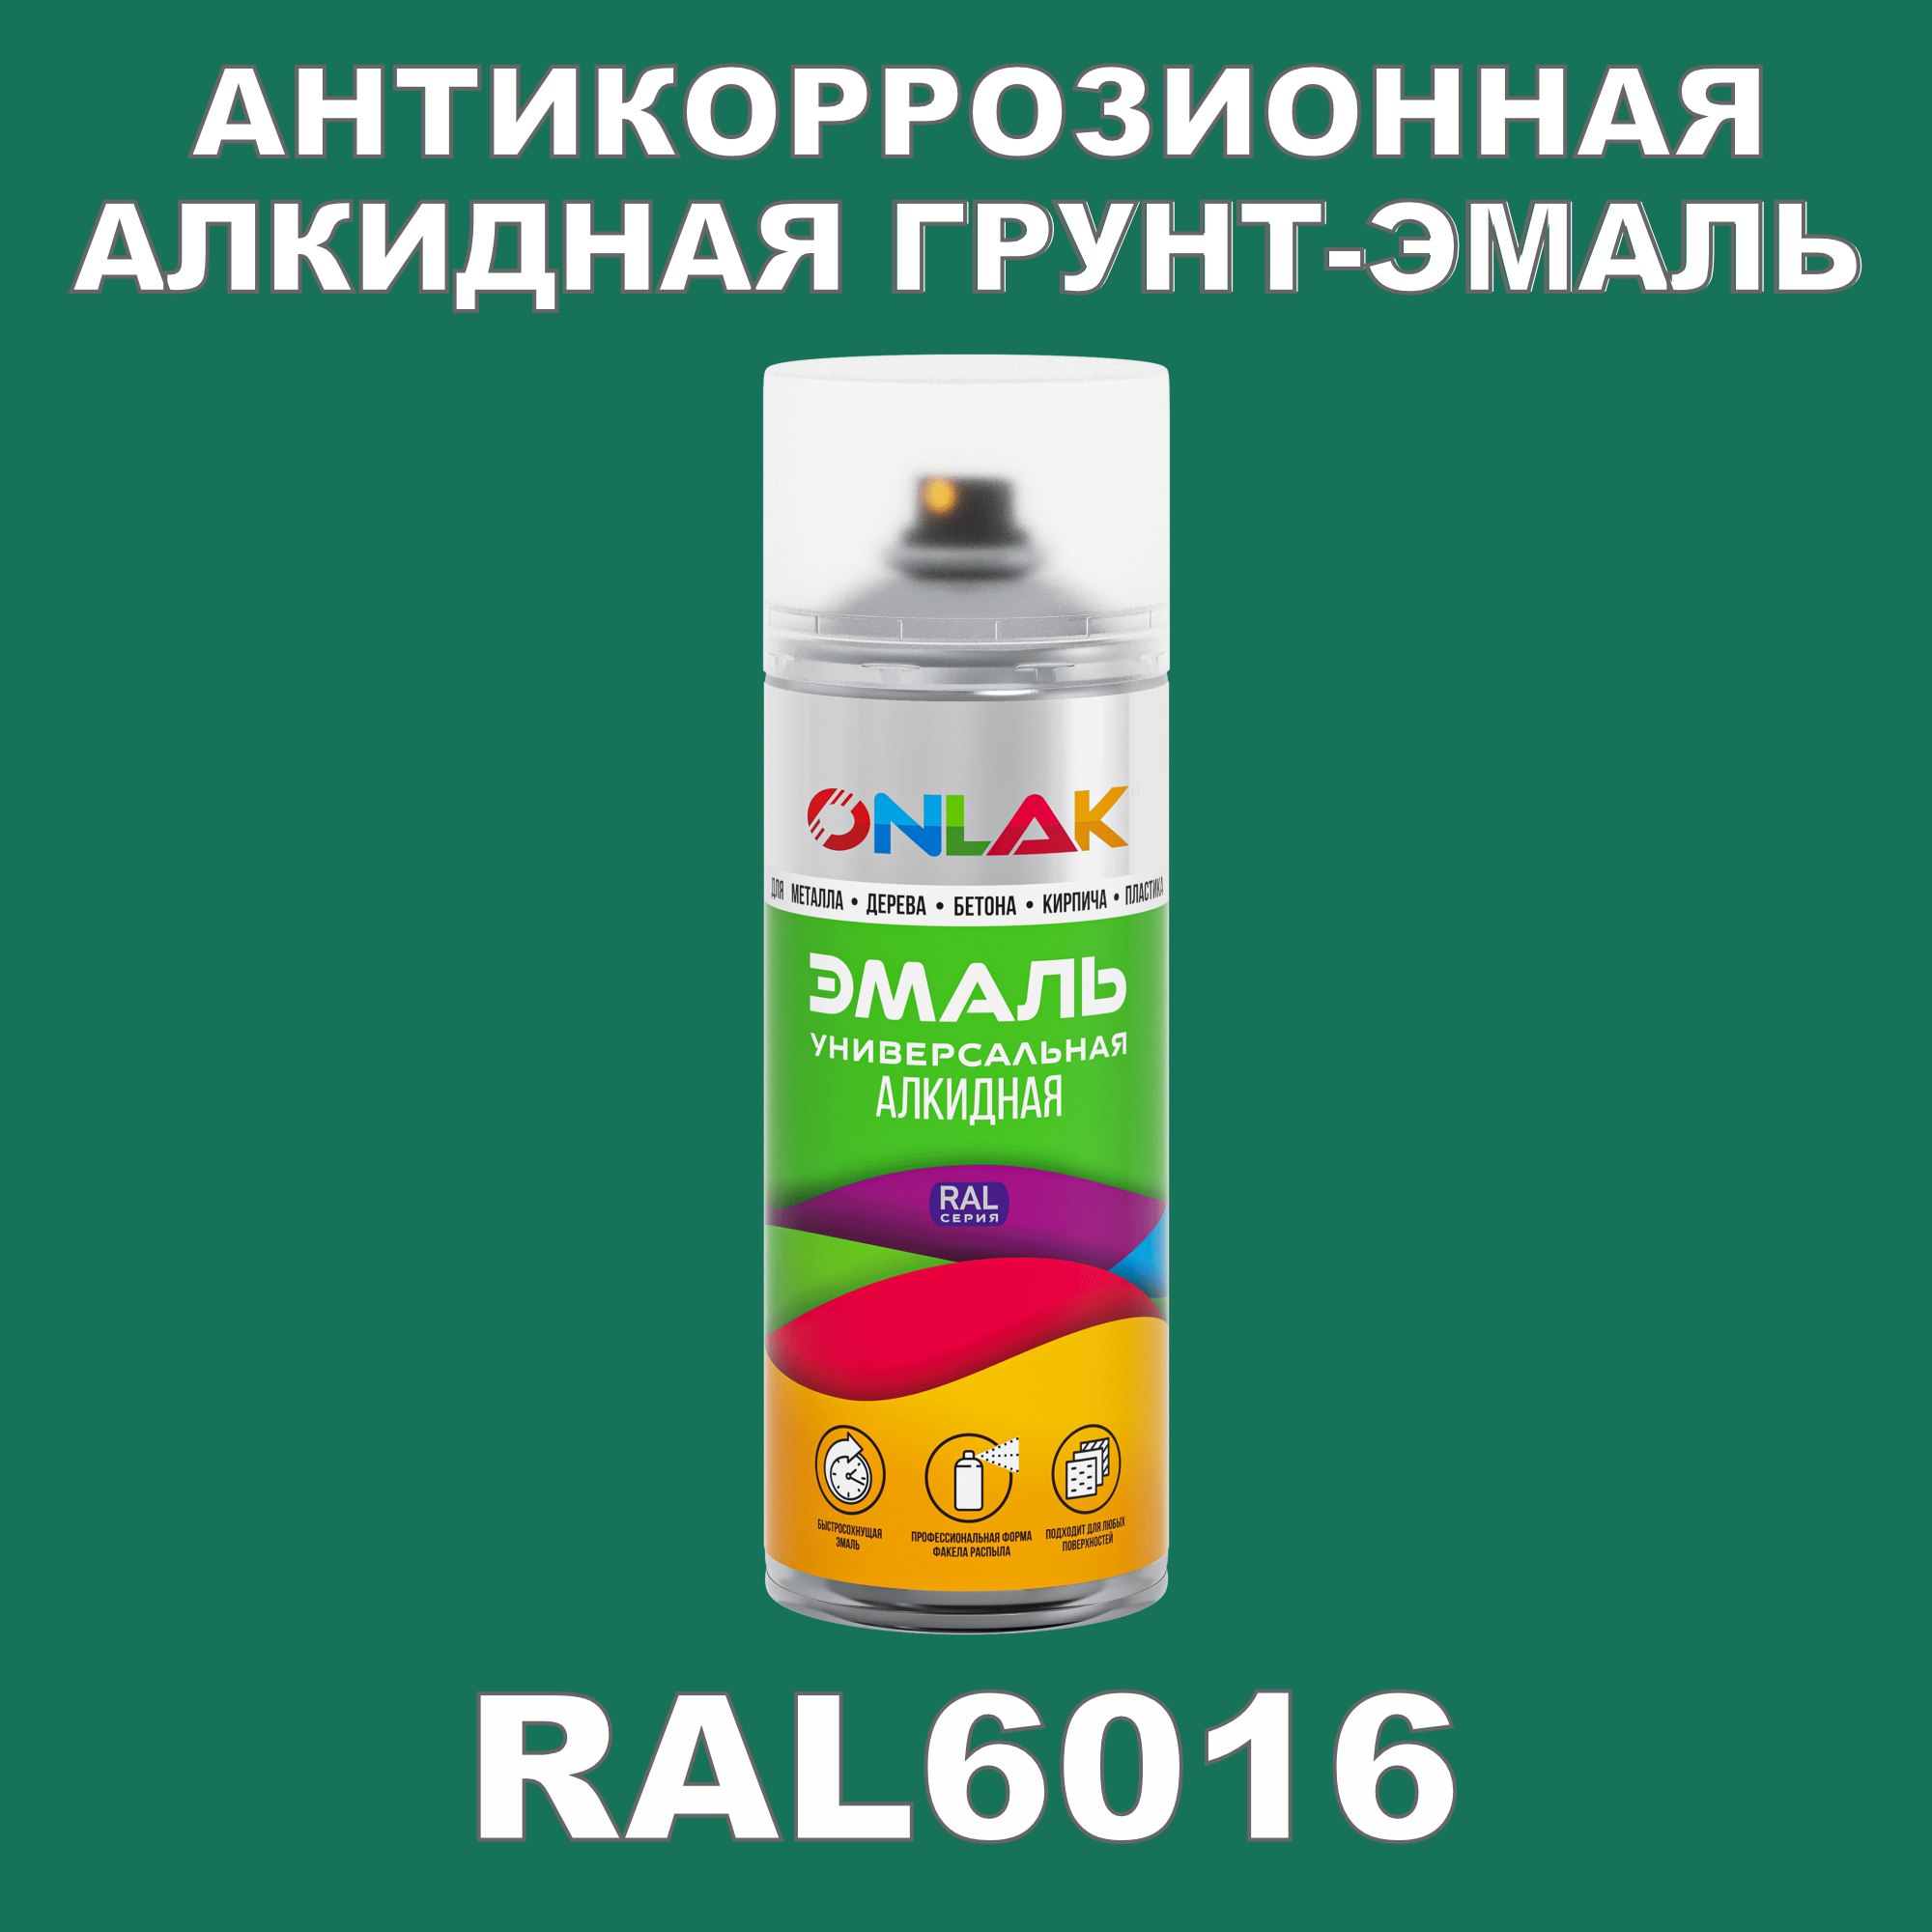 Антикоррозионная грунт-эмаль ONLAK RAL6016 полуматовая для металла и защиты от ржавчины